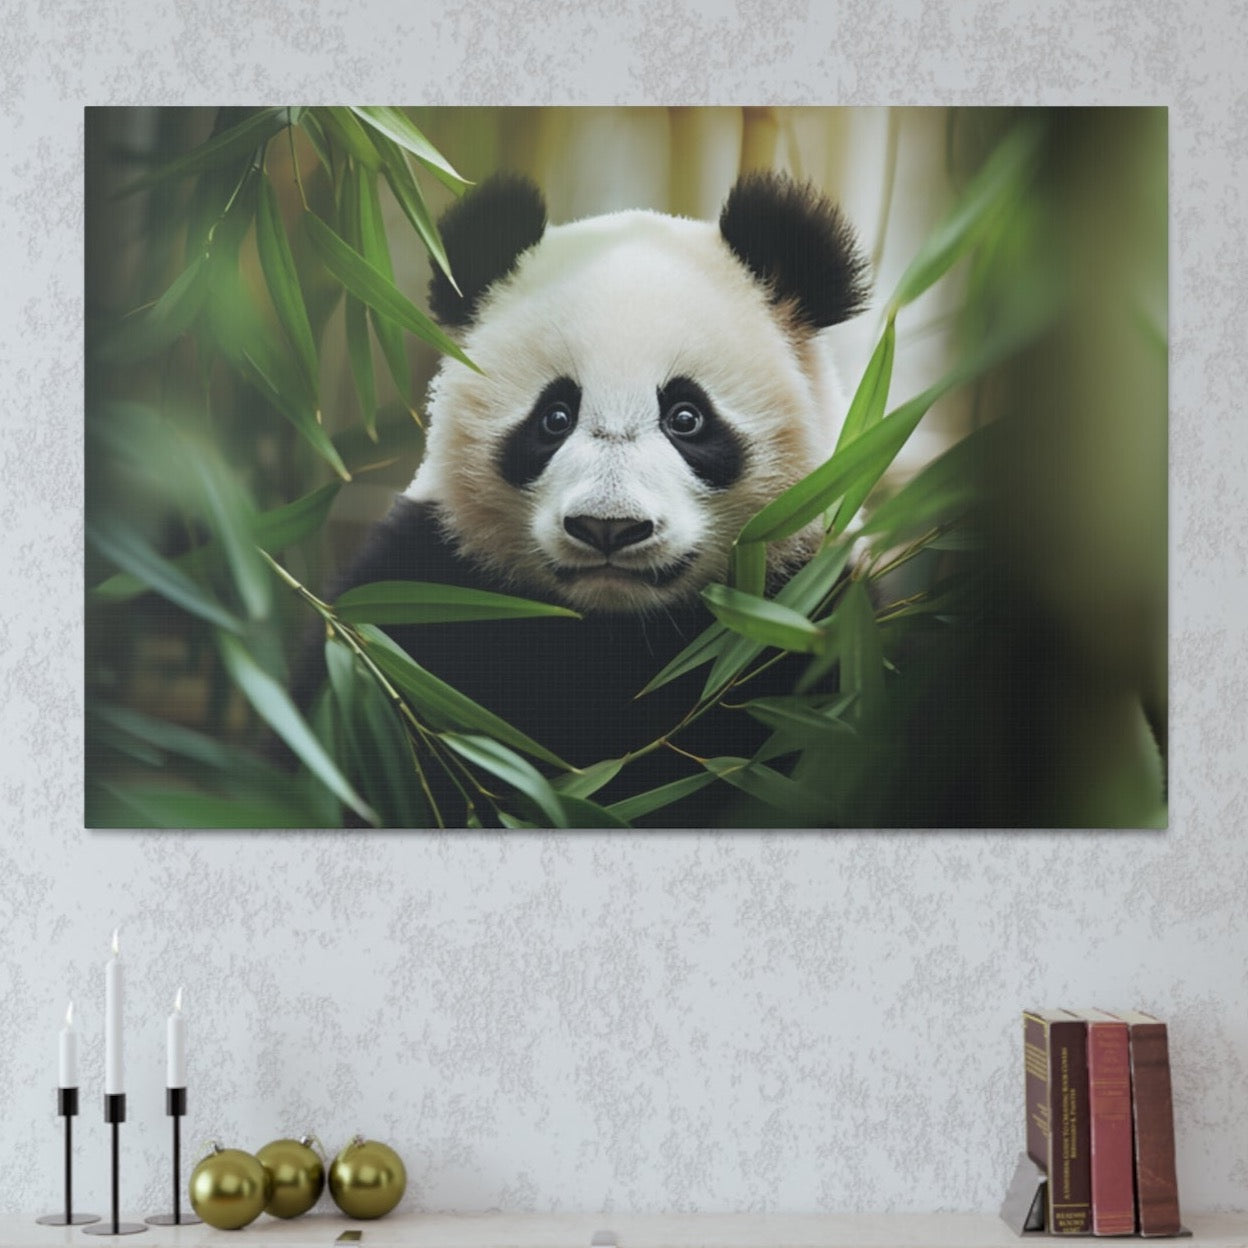 panda aesthetic wall decor, cute panda wall decor ideas